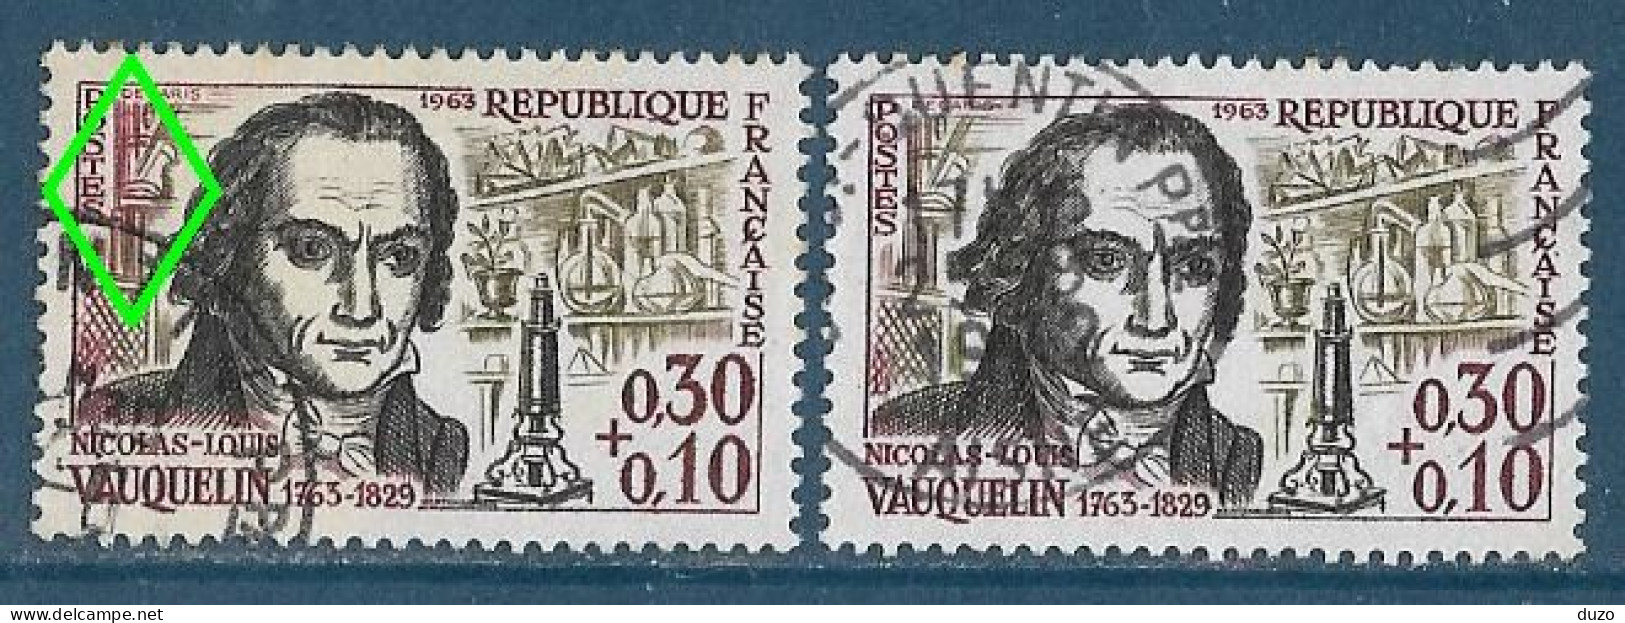 France 1963 - Variété - Y&T N° 1373 Vauquelin (oblit) - 1 Exemplaire Fond De Gauche En Rouge + 1 Normal Brun Olive. - Usati